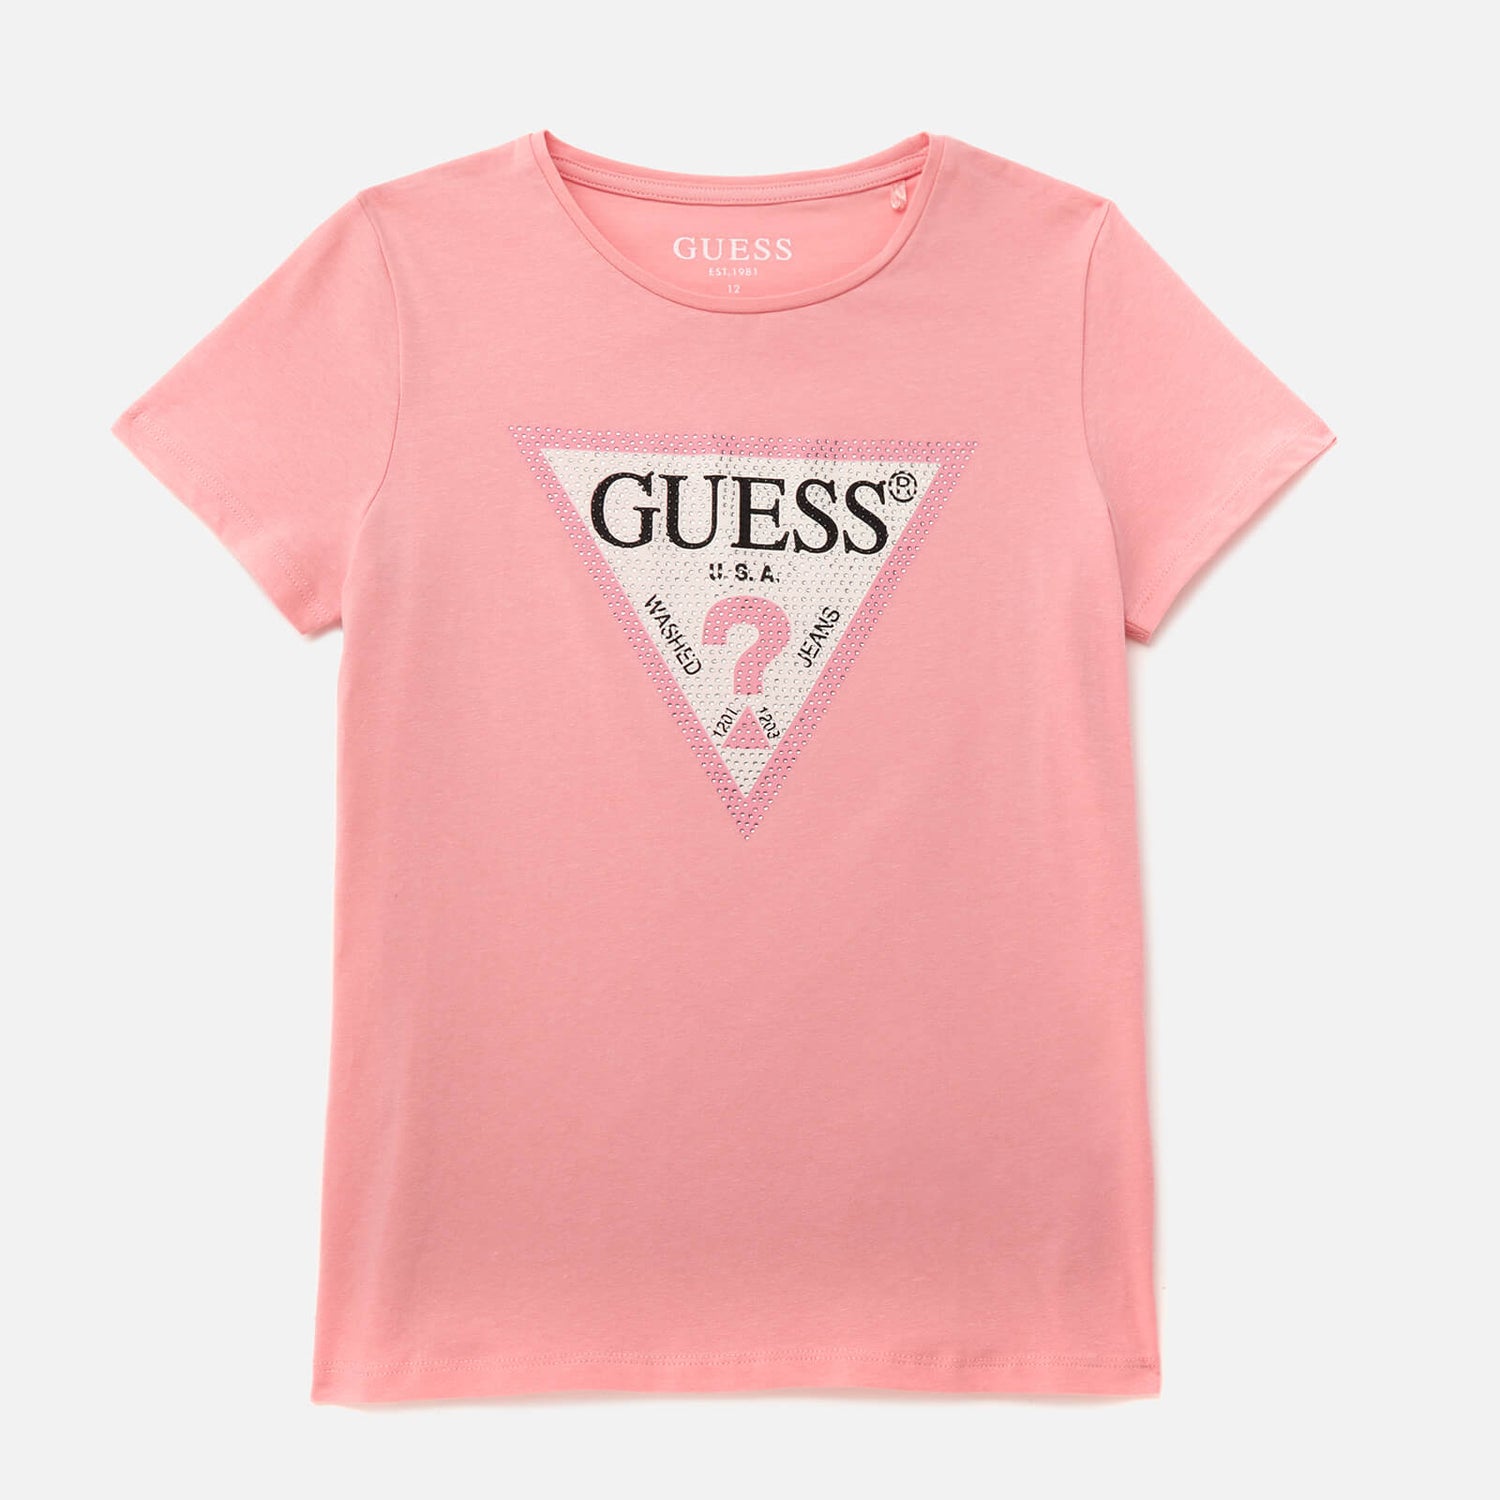 Guess Girls' Short Sleeve T-Shirt - Pop Gum Pink - 7 Years